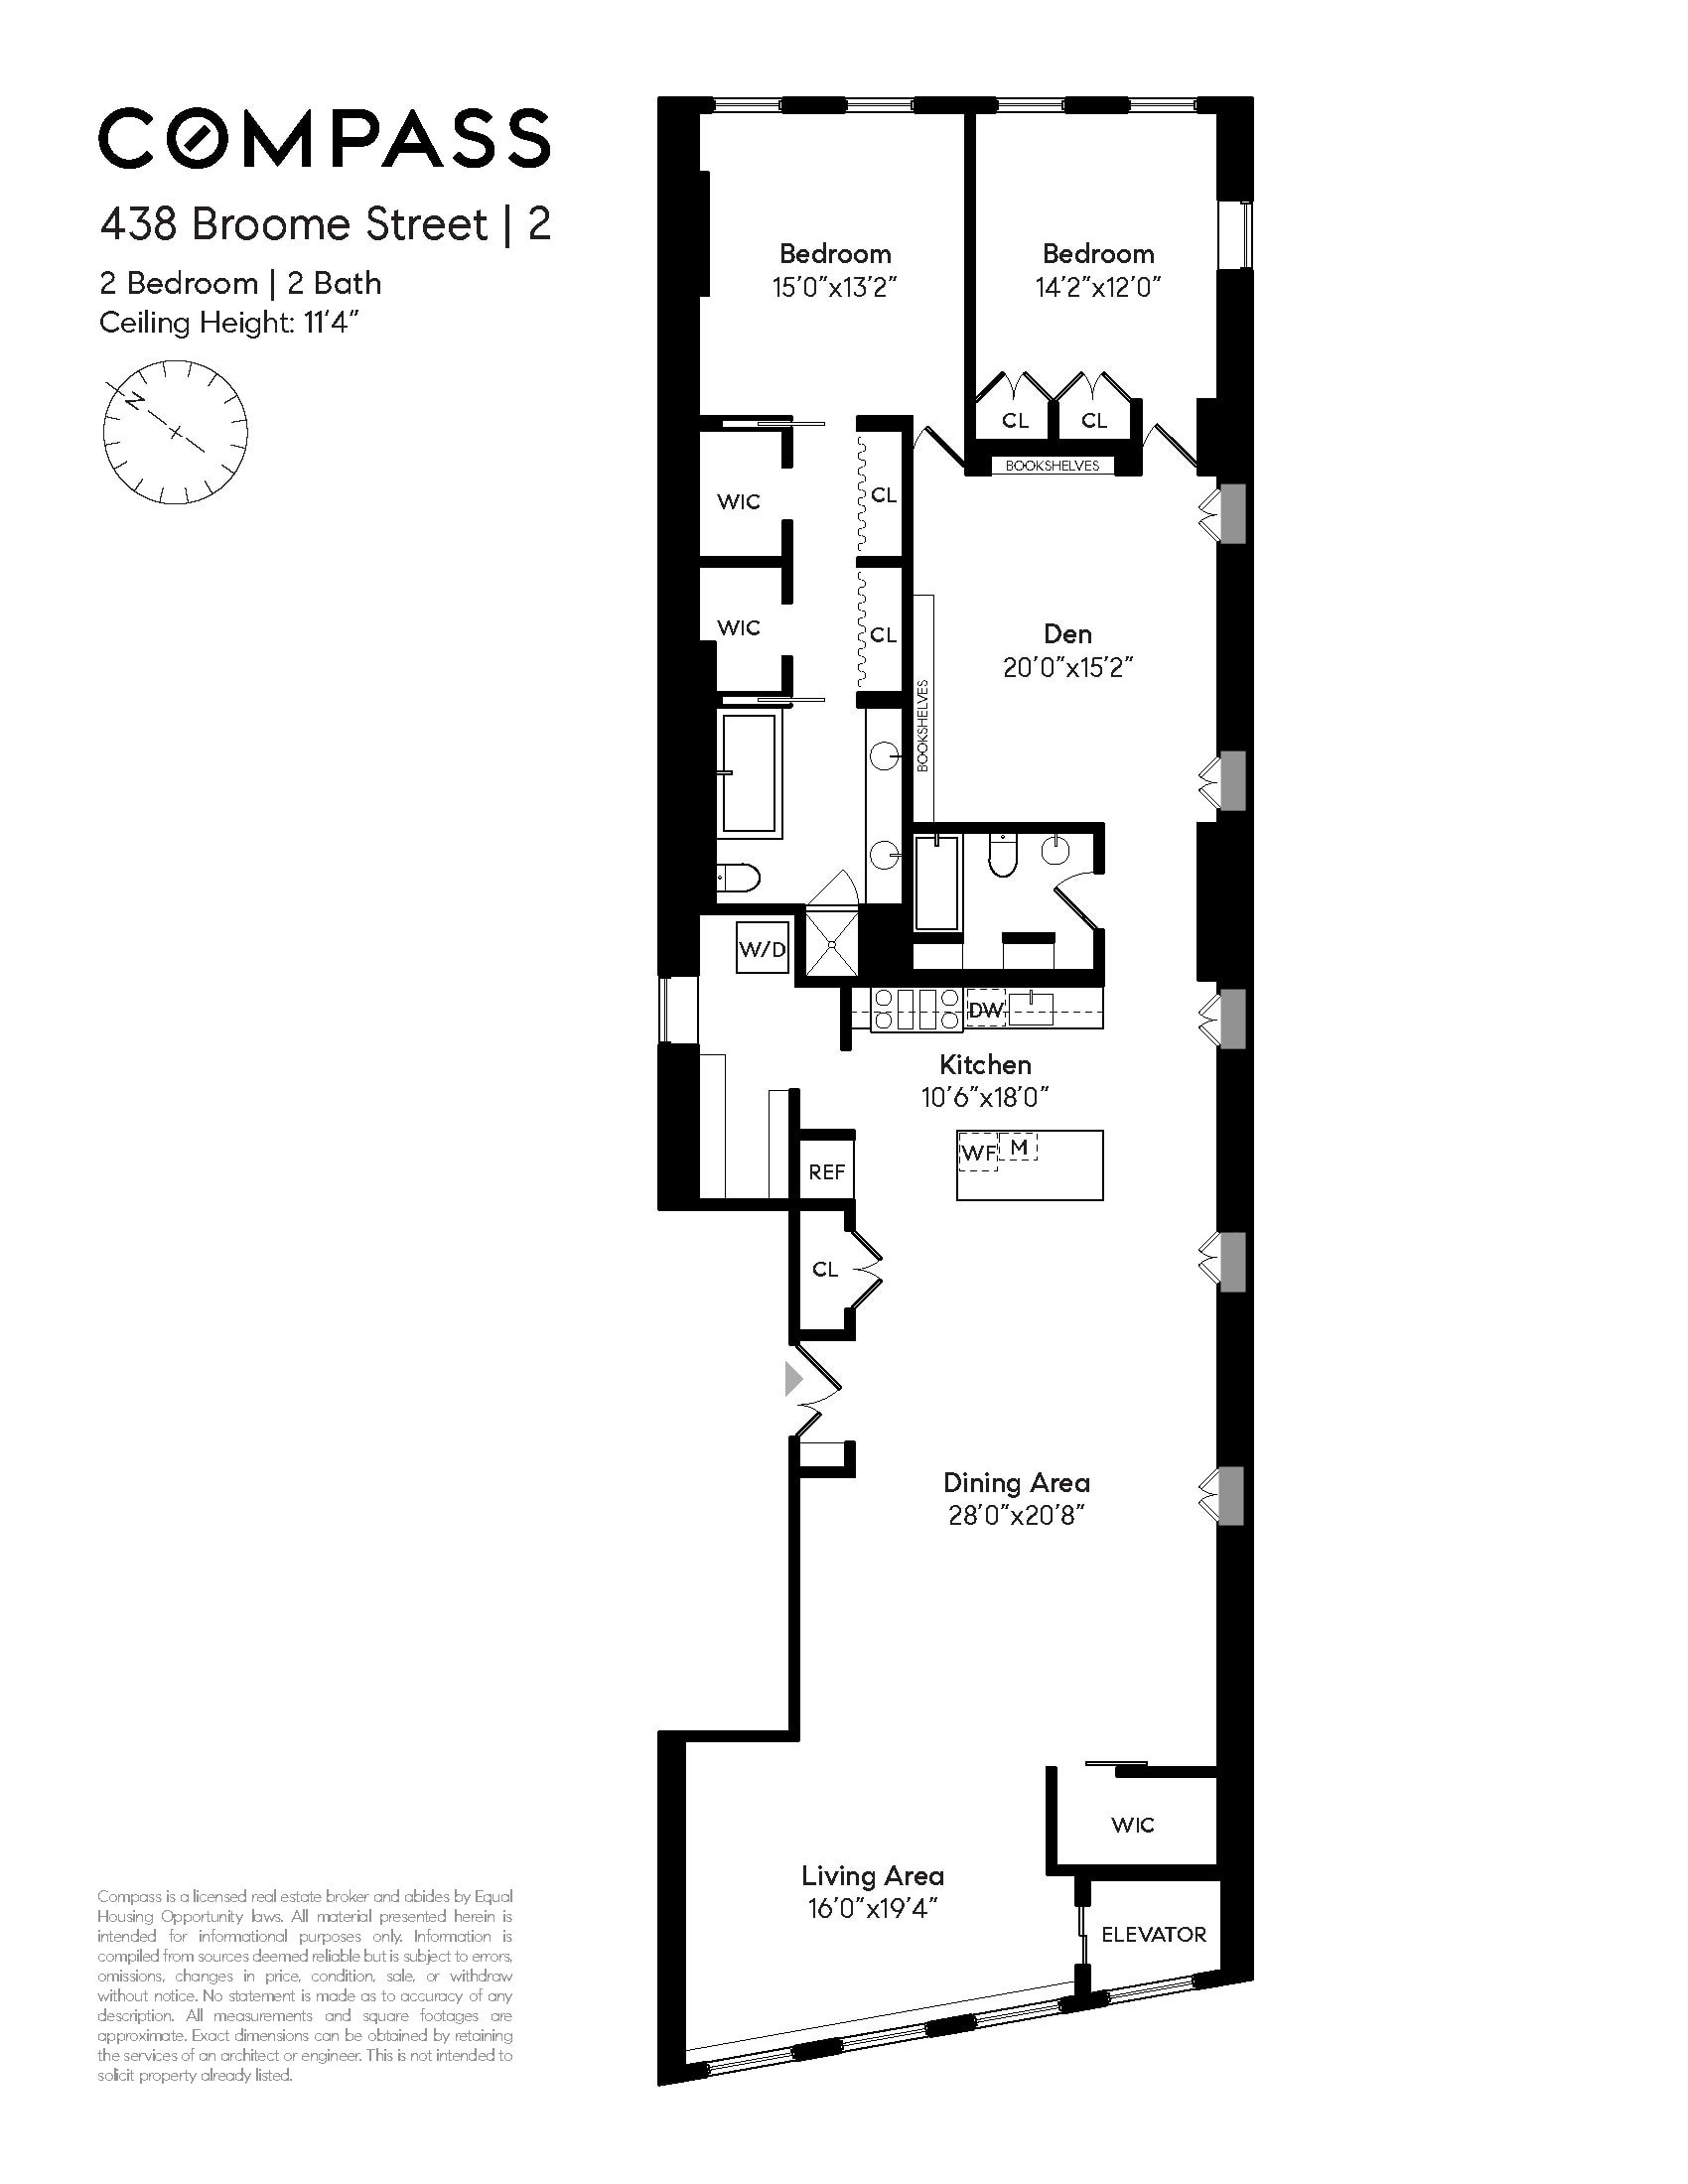 Floorplan for 438 Broome Street, 2